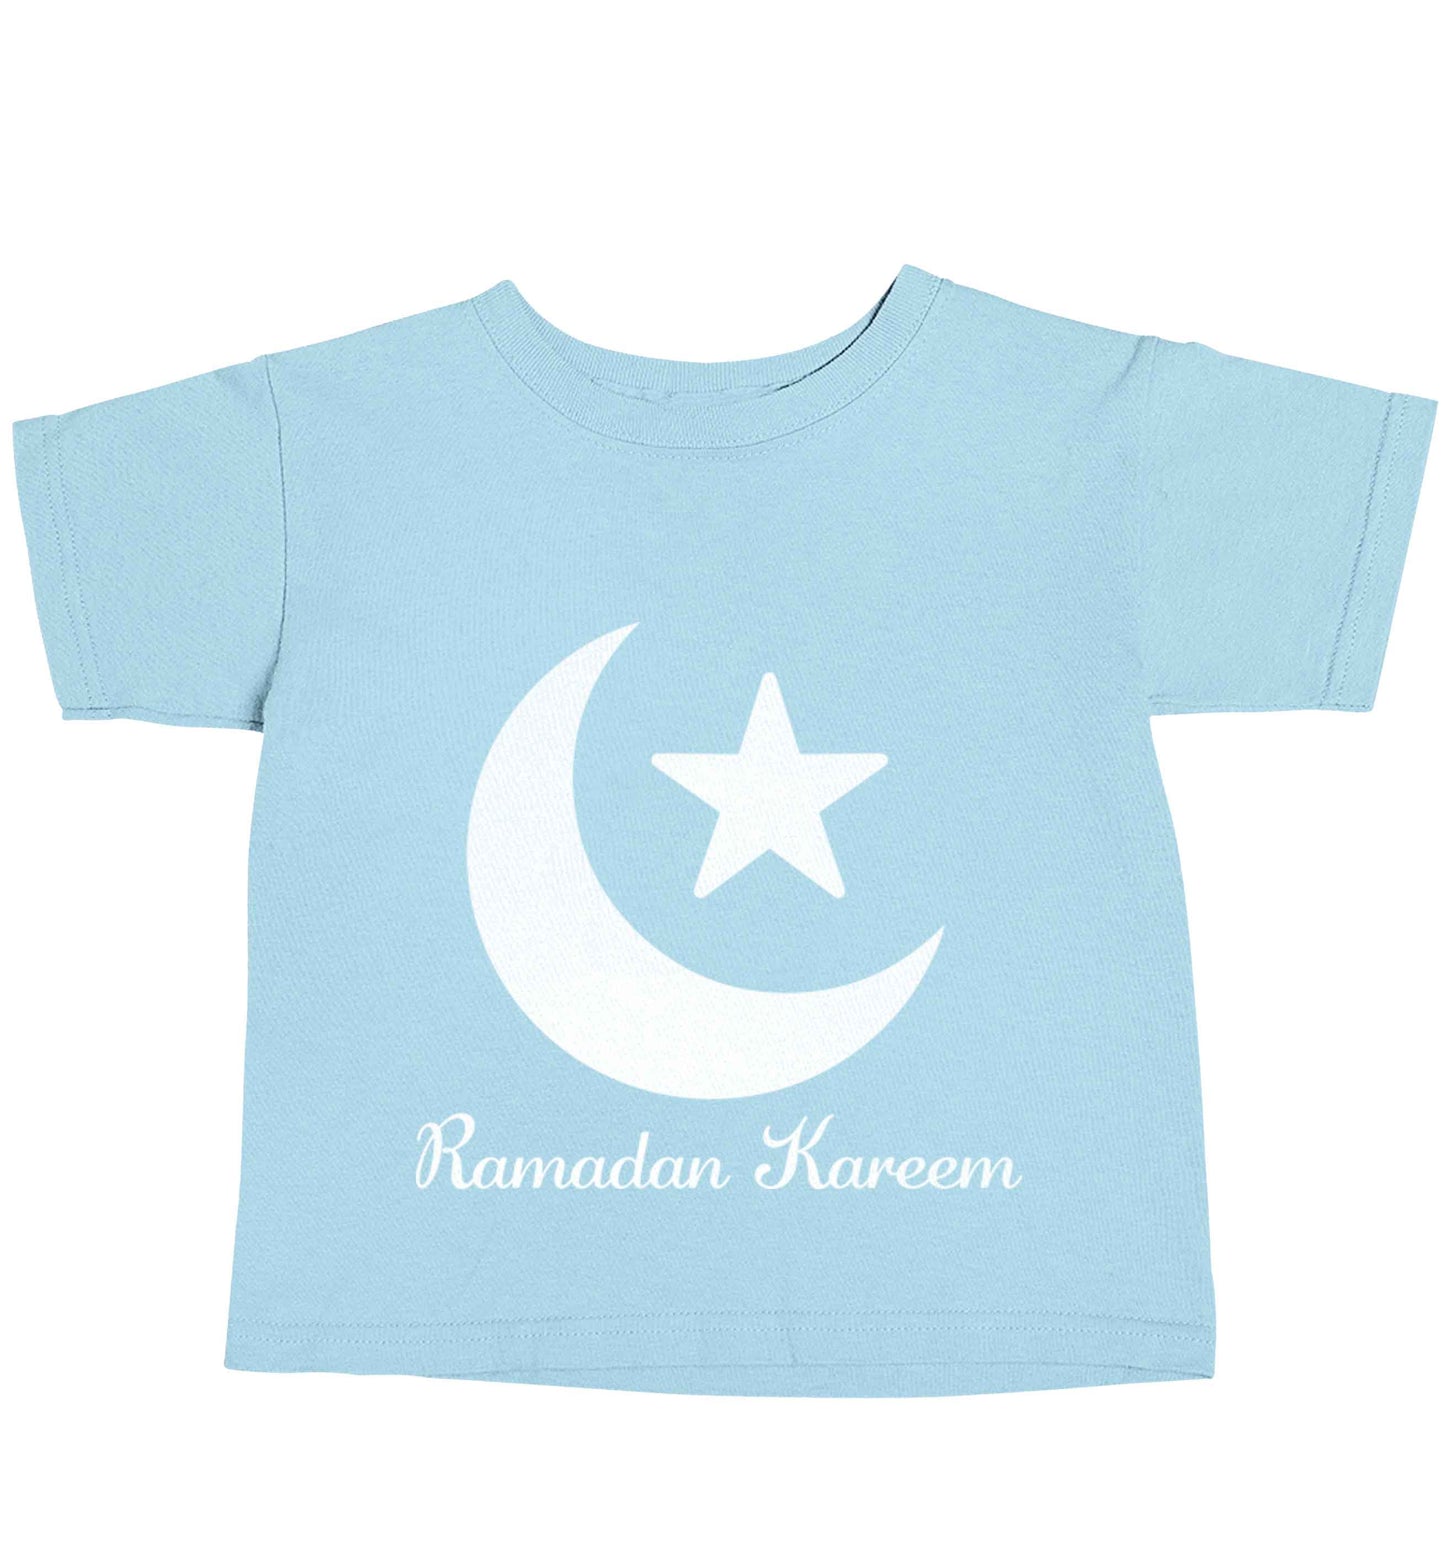 Ramadan kareem light blue baby toddler Tshirt 2 Years